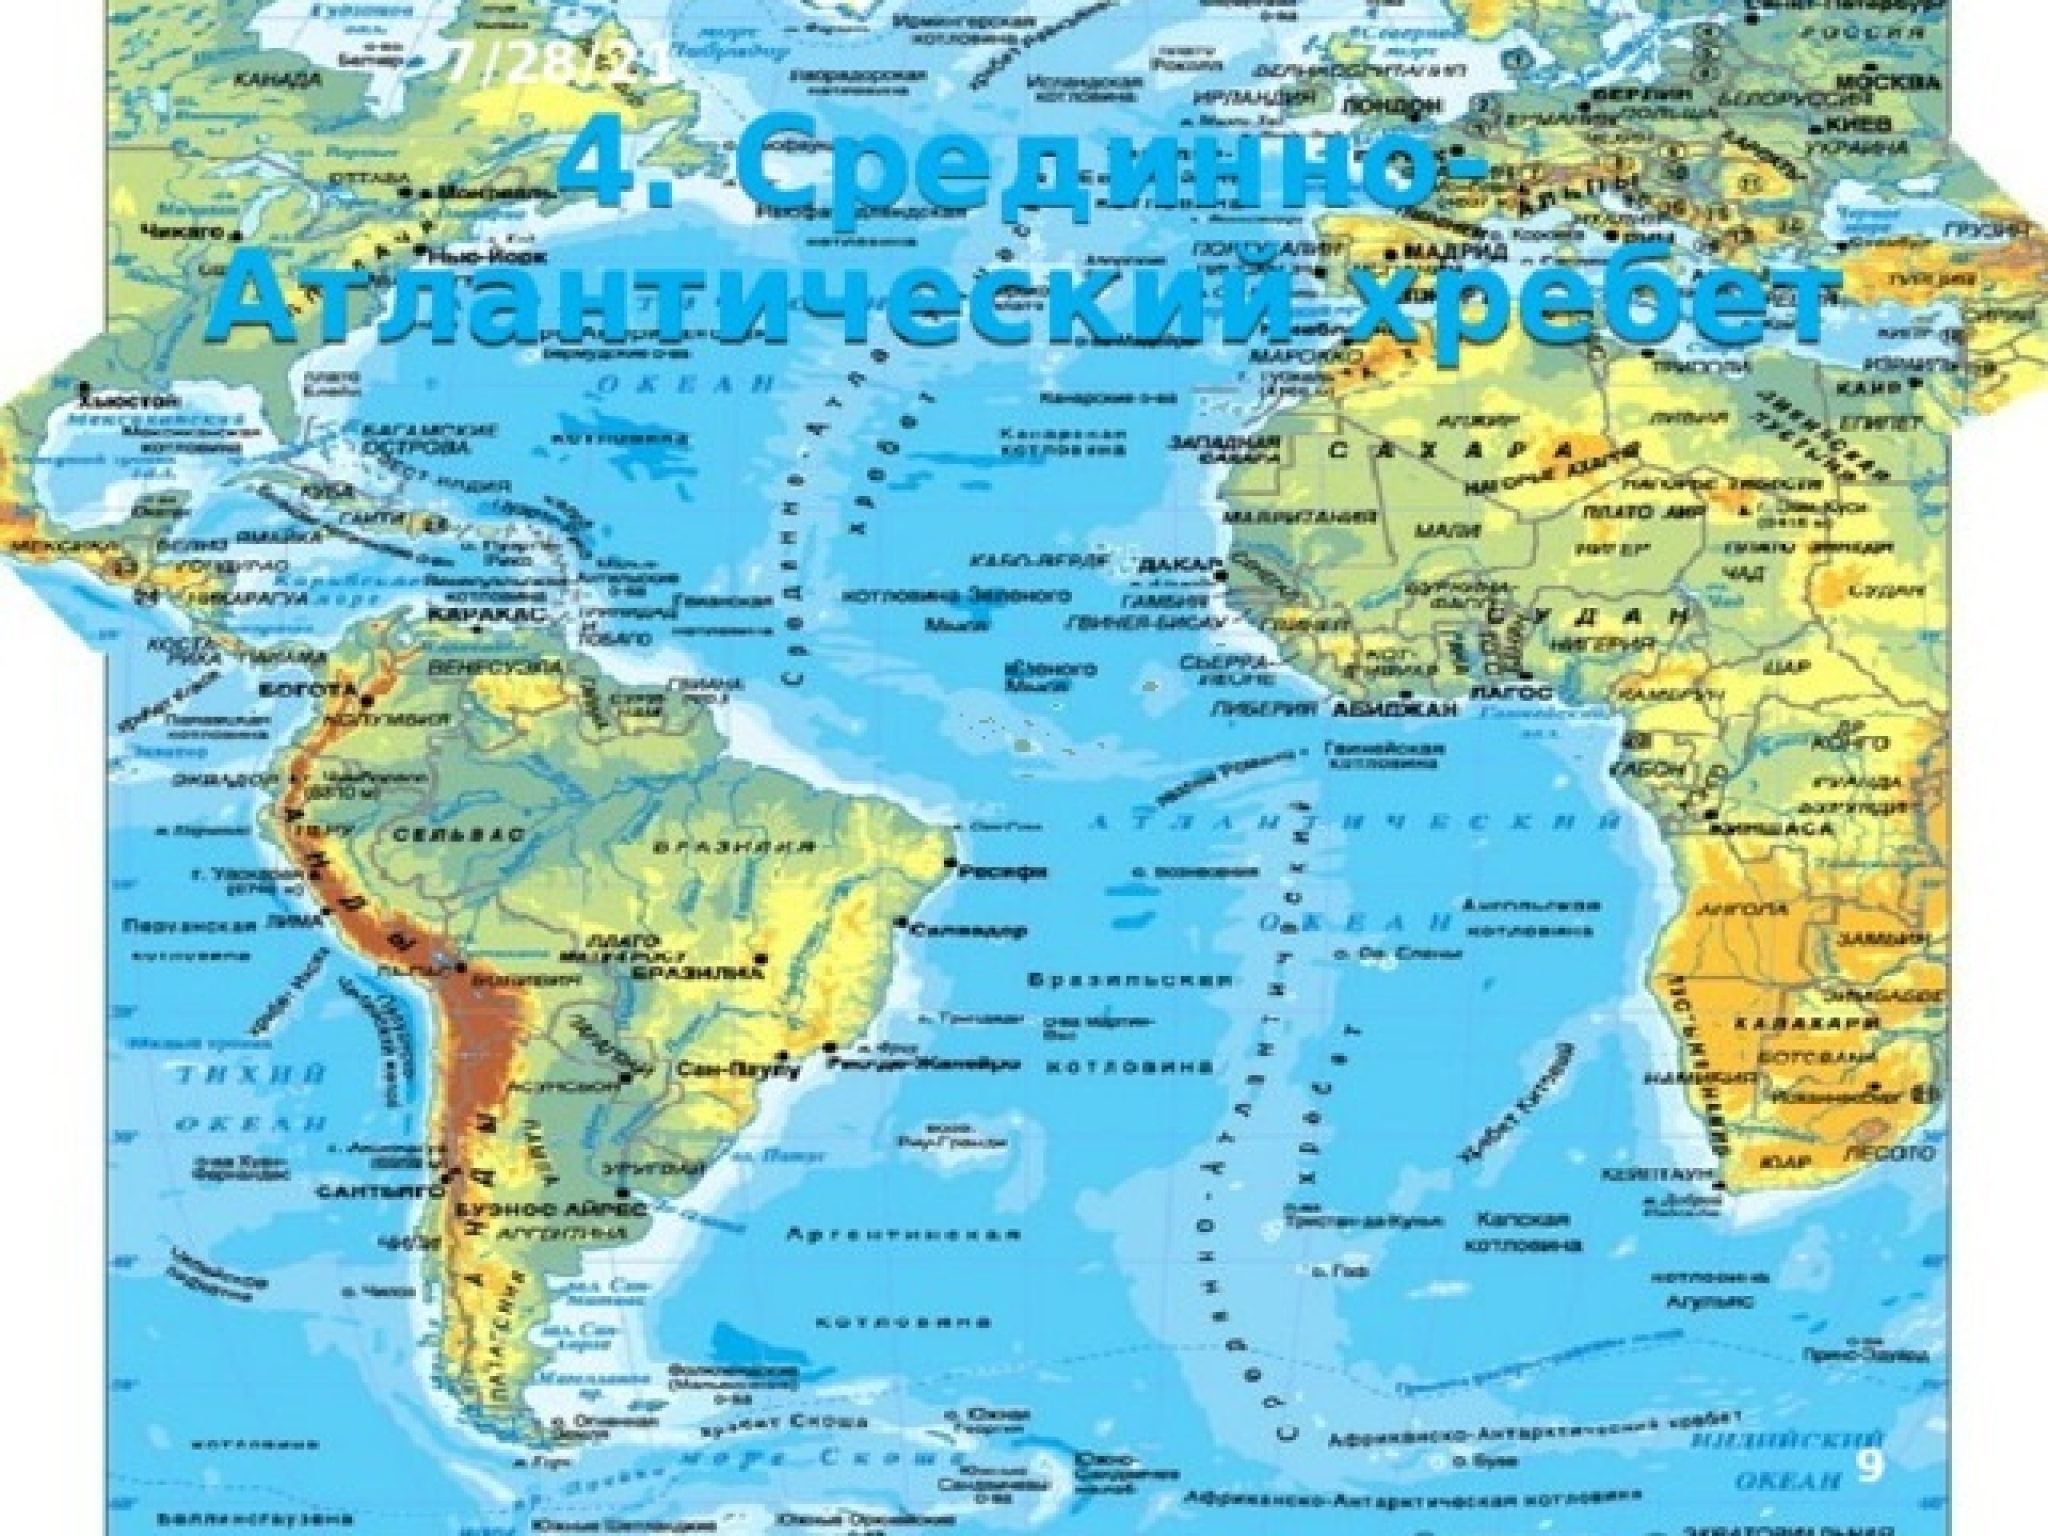 Юго западная часть тихого океана. Северо Атлантический хребет на карте Атлантического океана. Хребты Атлантического океана на карте. Хребты Атлантического океана на физической карте.